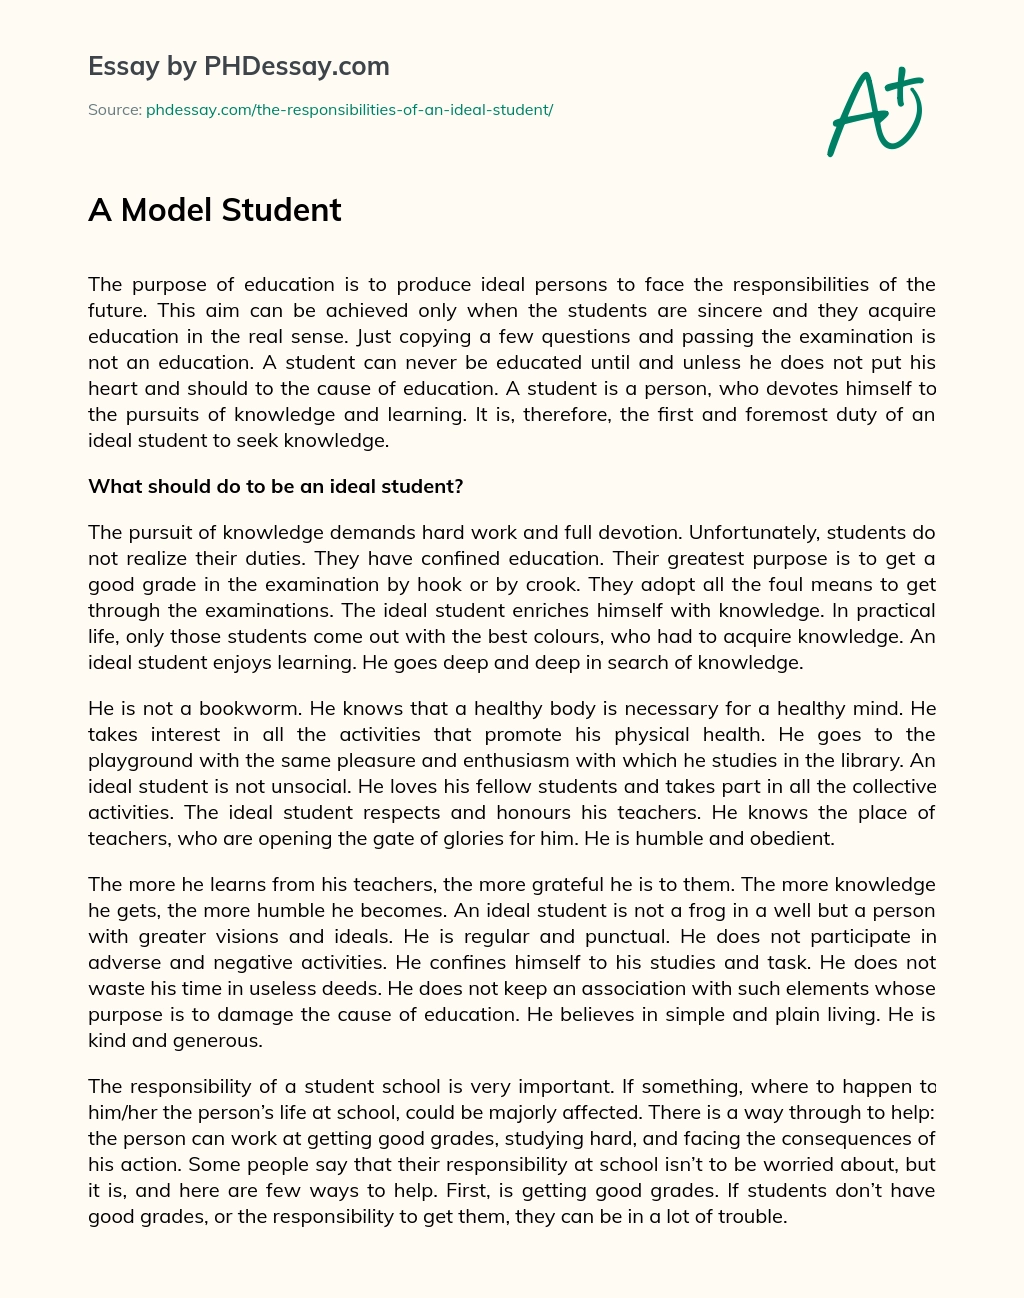 A Model Student essay